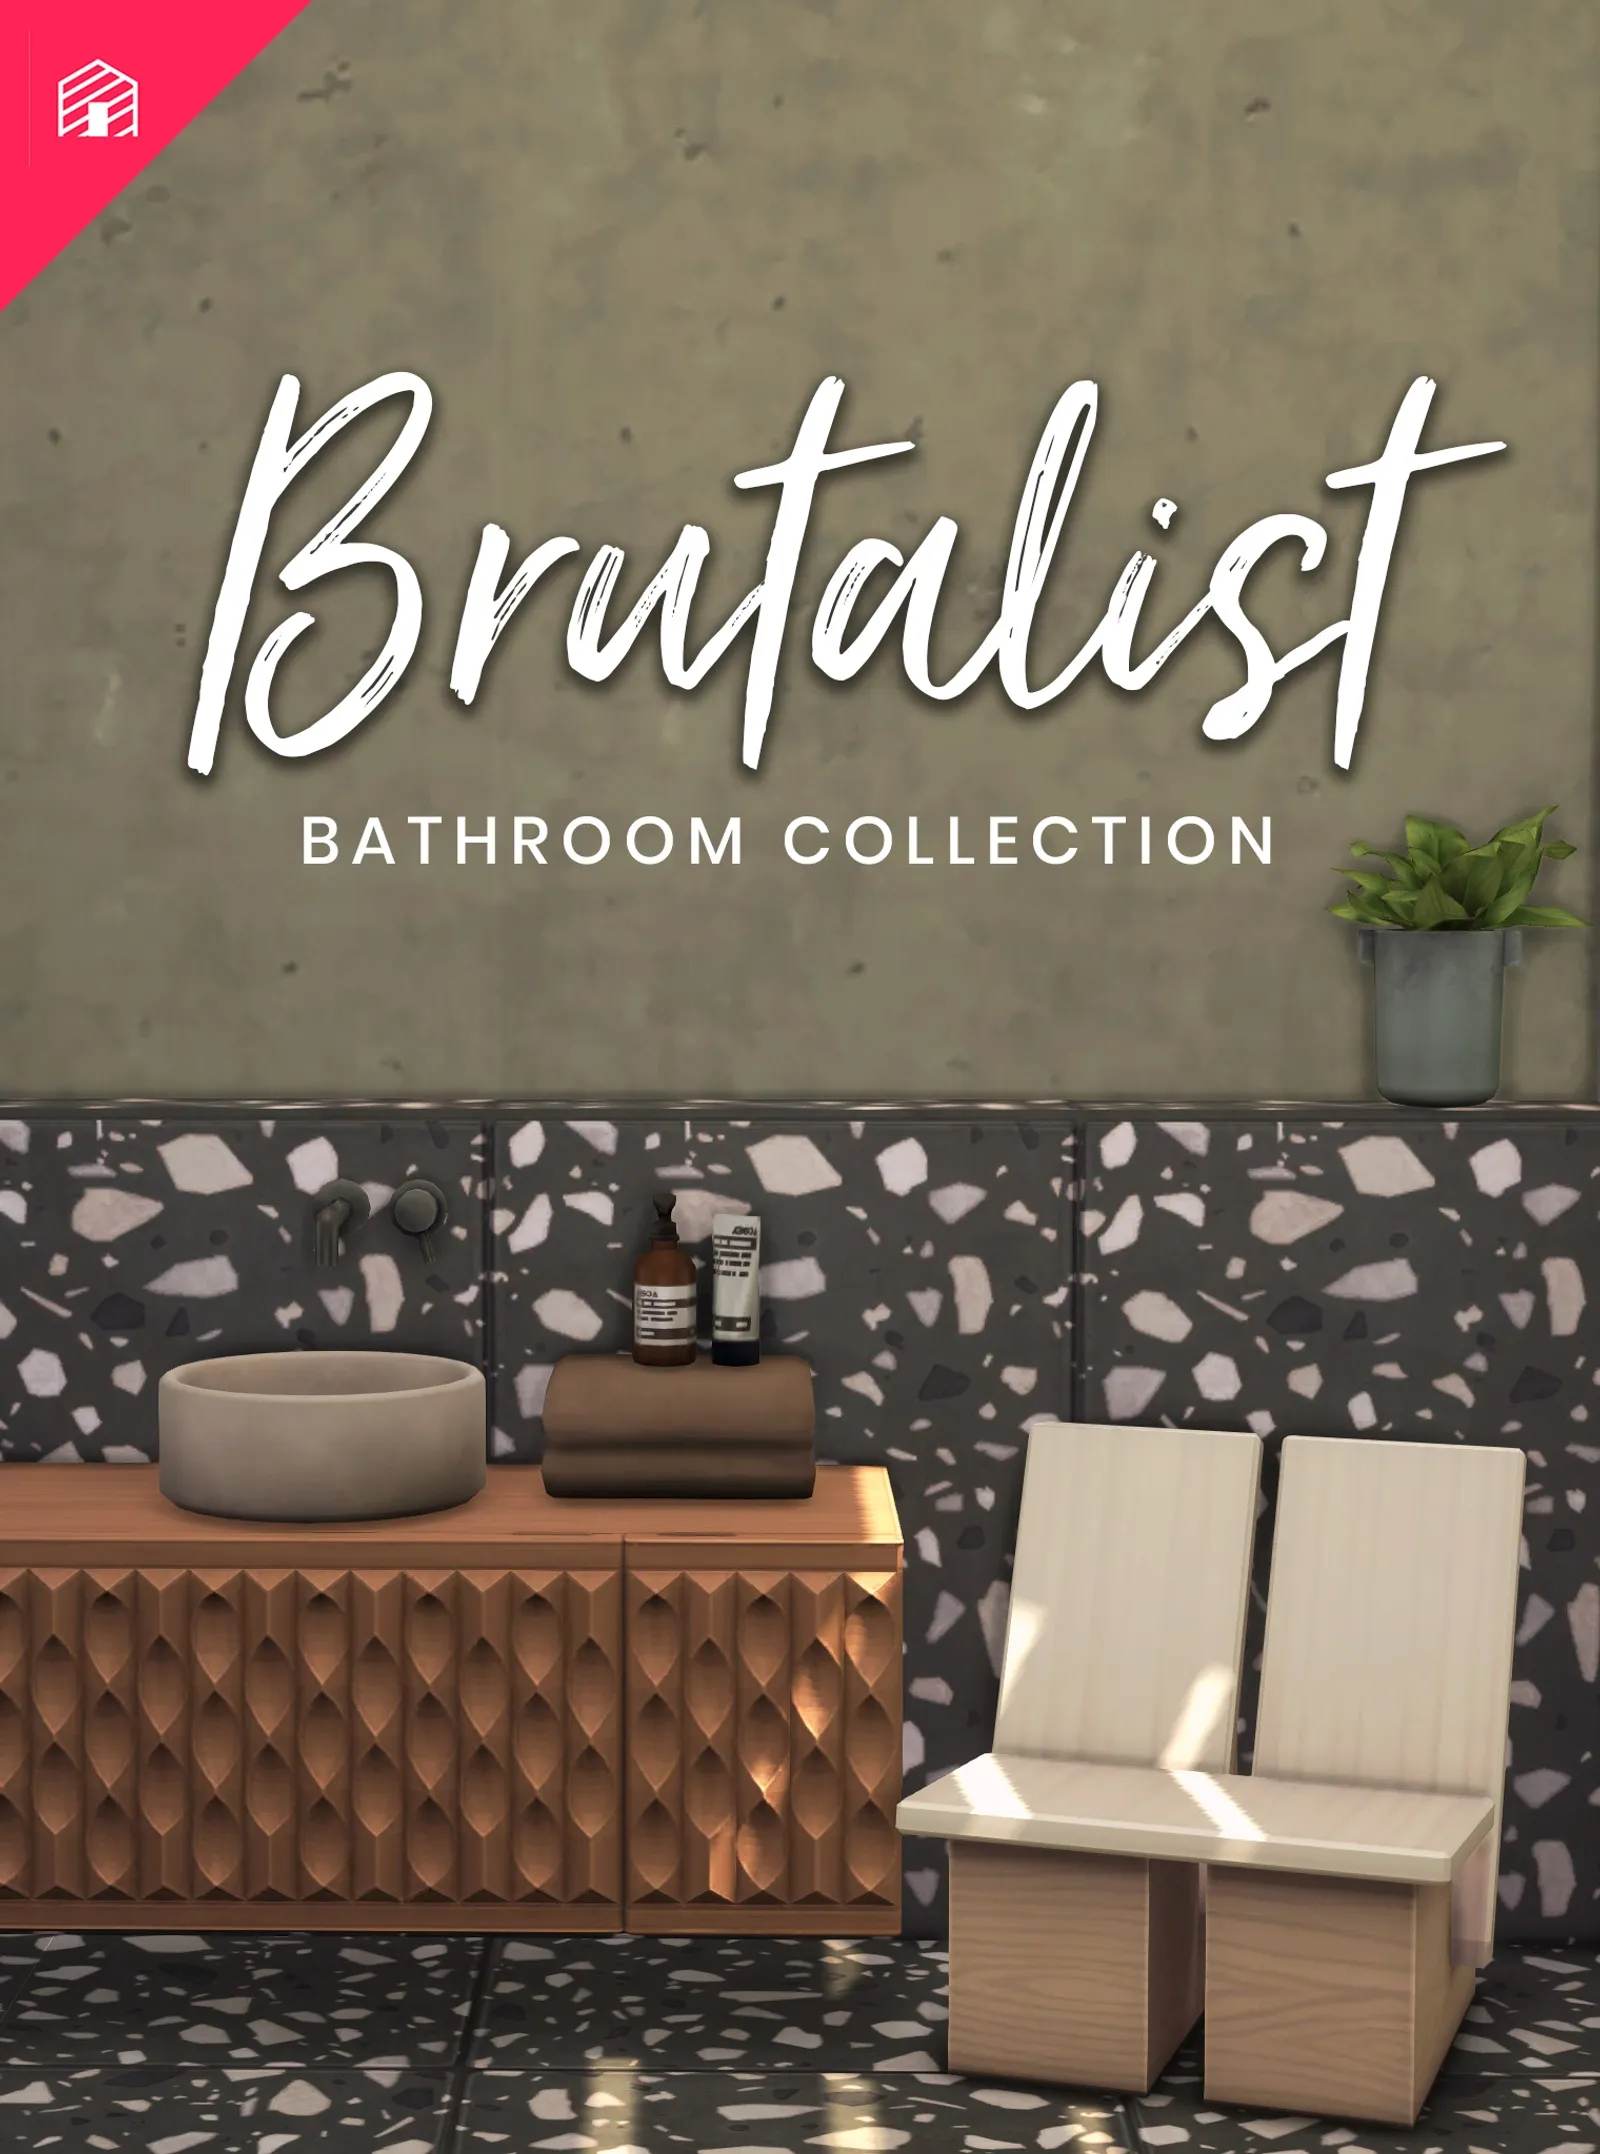 The Brutalist Bathroom